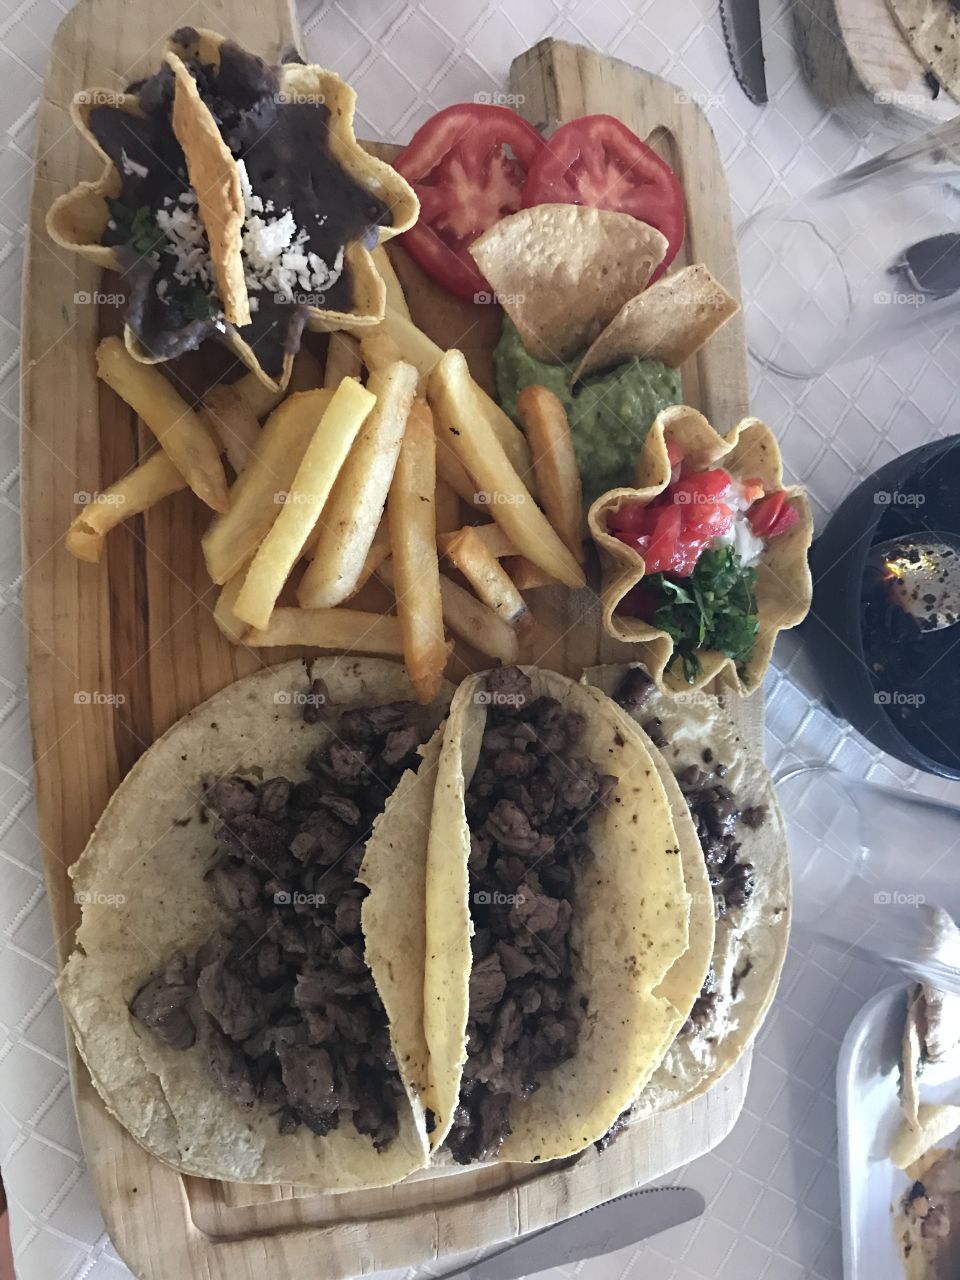 Delicious Mexican Taco in Mexico City 😋